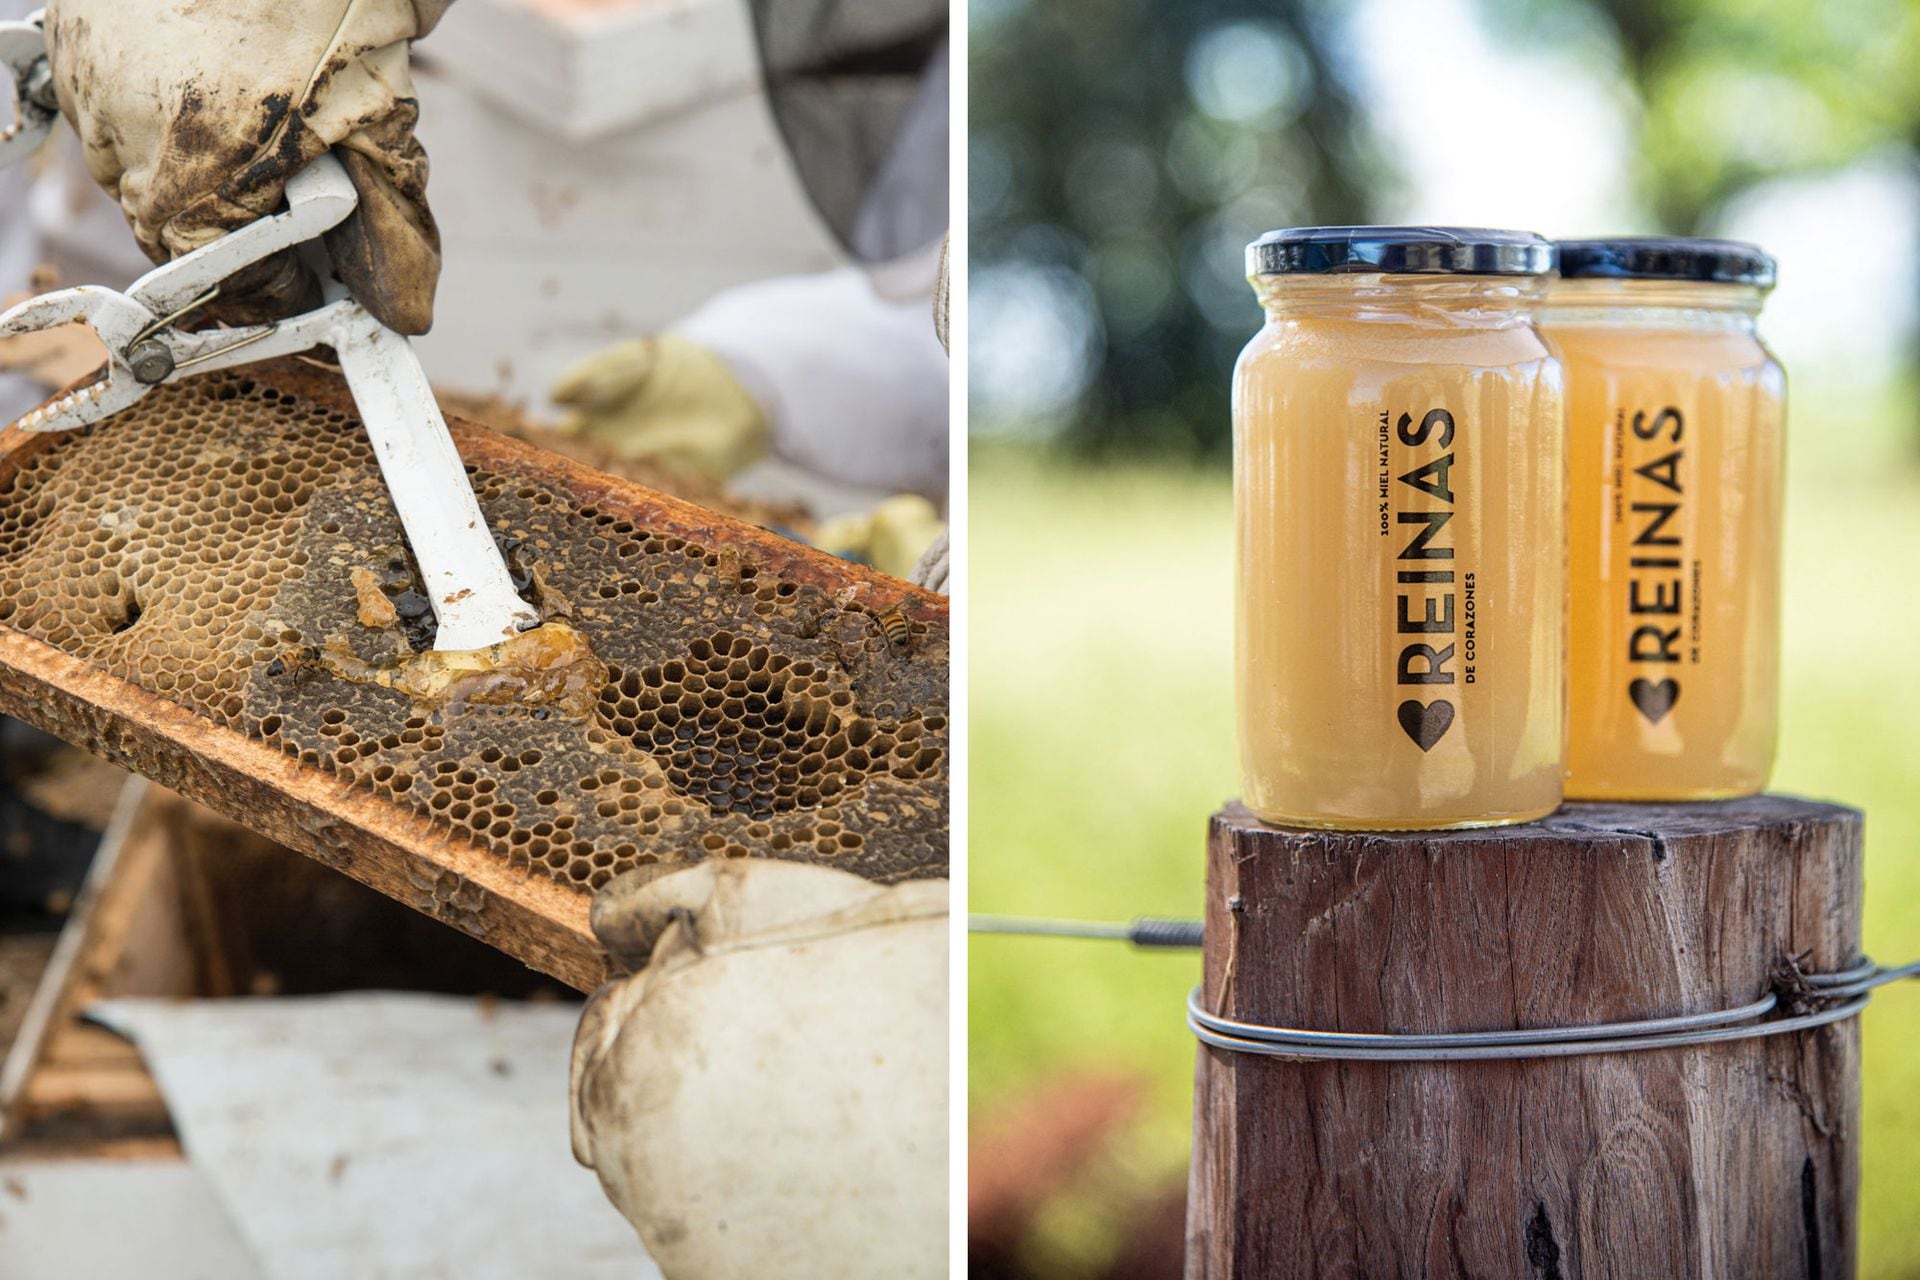 Cuando la miel está madura, las
abejas le ponen una capa de cera que
se llama opérculo. La miel va directo
a los frascos, sin procesos ni aditivos.